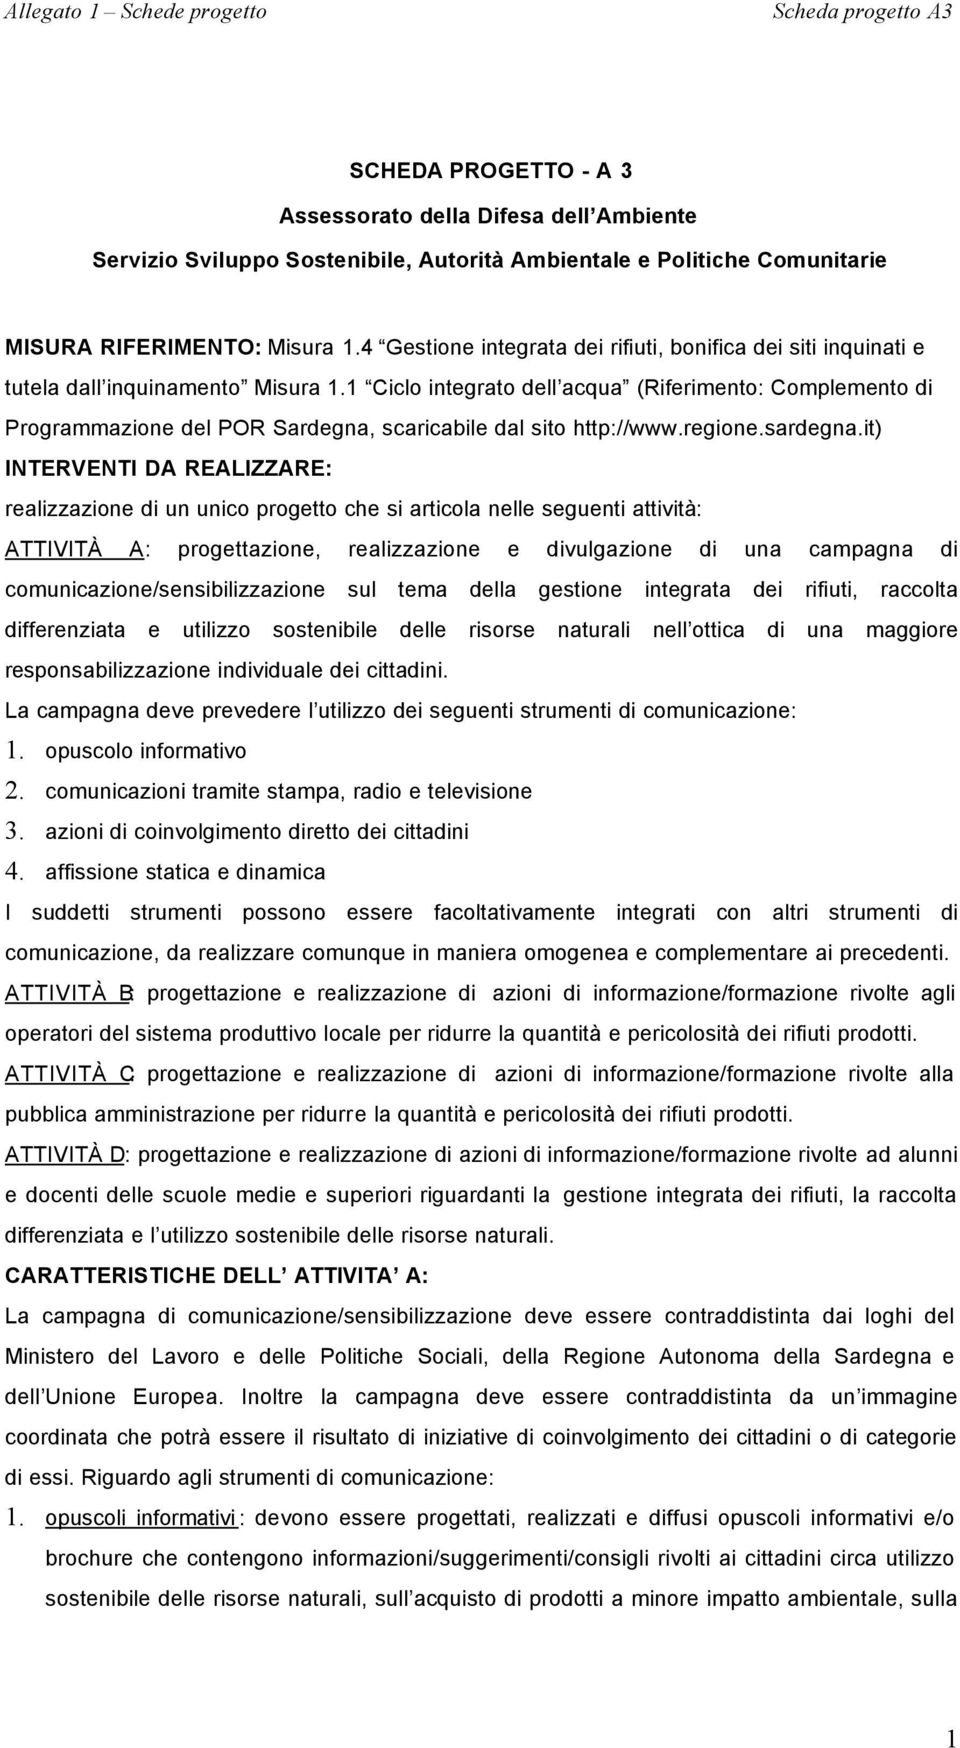 1 Ciclo integrato dell acqua (Riferimento: Complemento di Programmazione del POR Sardegna, scaricabile dal sito http://www.regione.sardegna.